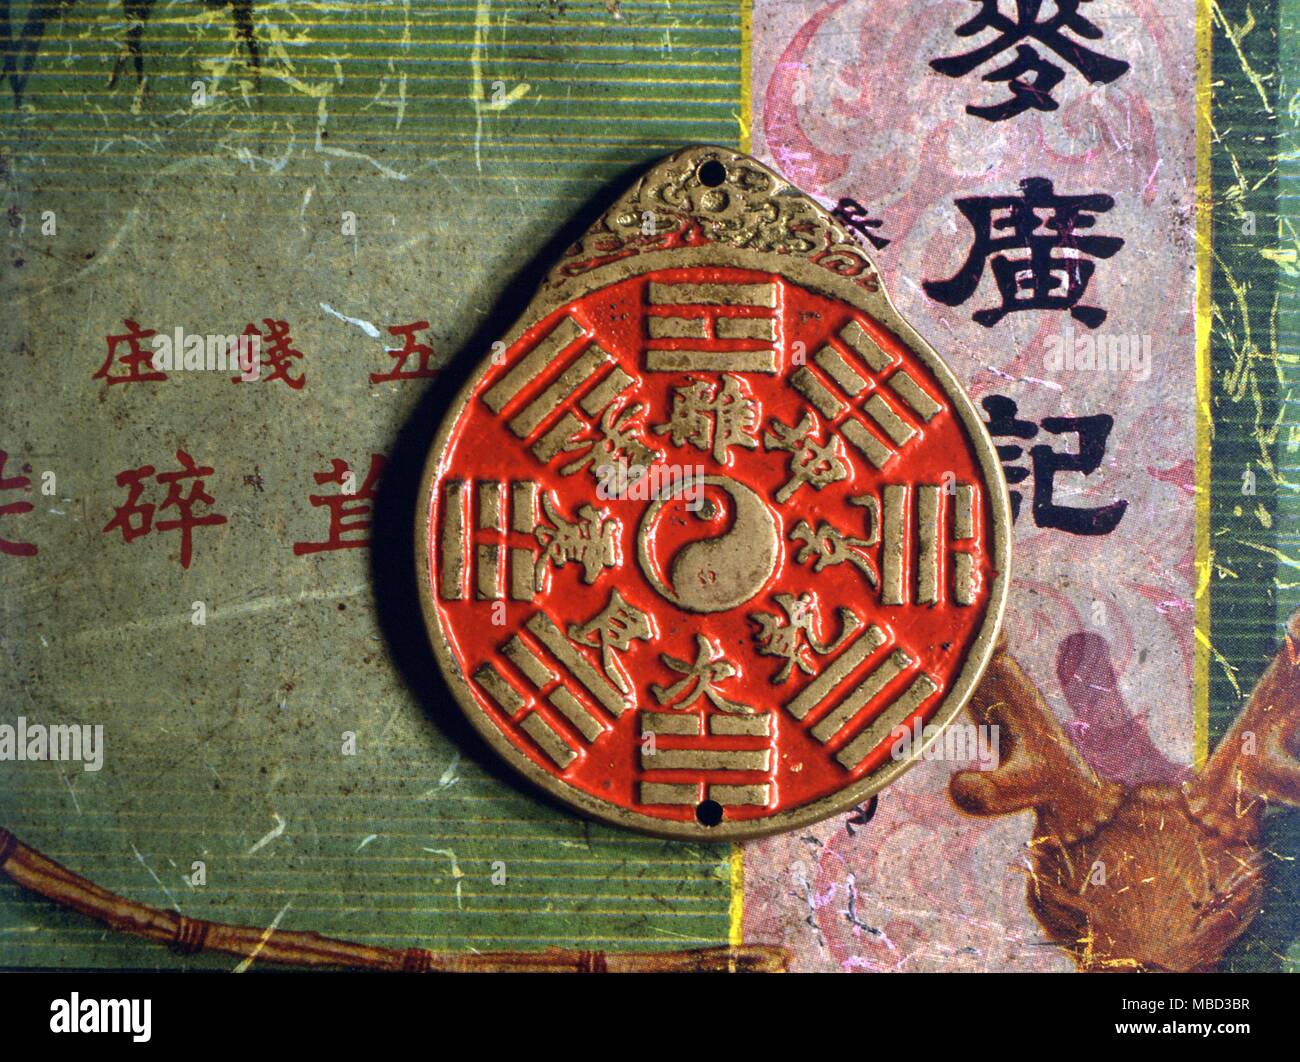 Simboli - Yin Yang. Yin Yang (tai chi) rappresenta il dualismo che sta alla radice della filosofia Taoista. Otto trigrammi intorno al centro con i corrispondenti caratteri cinesi. Foto Stock